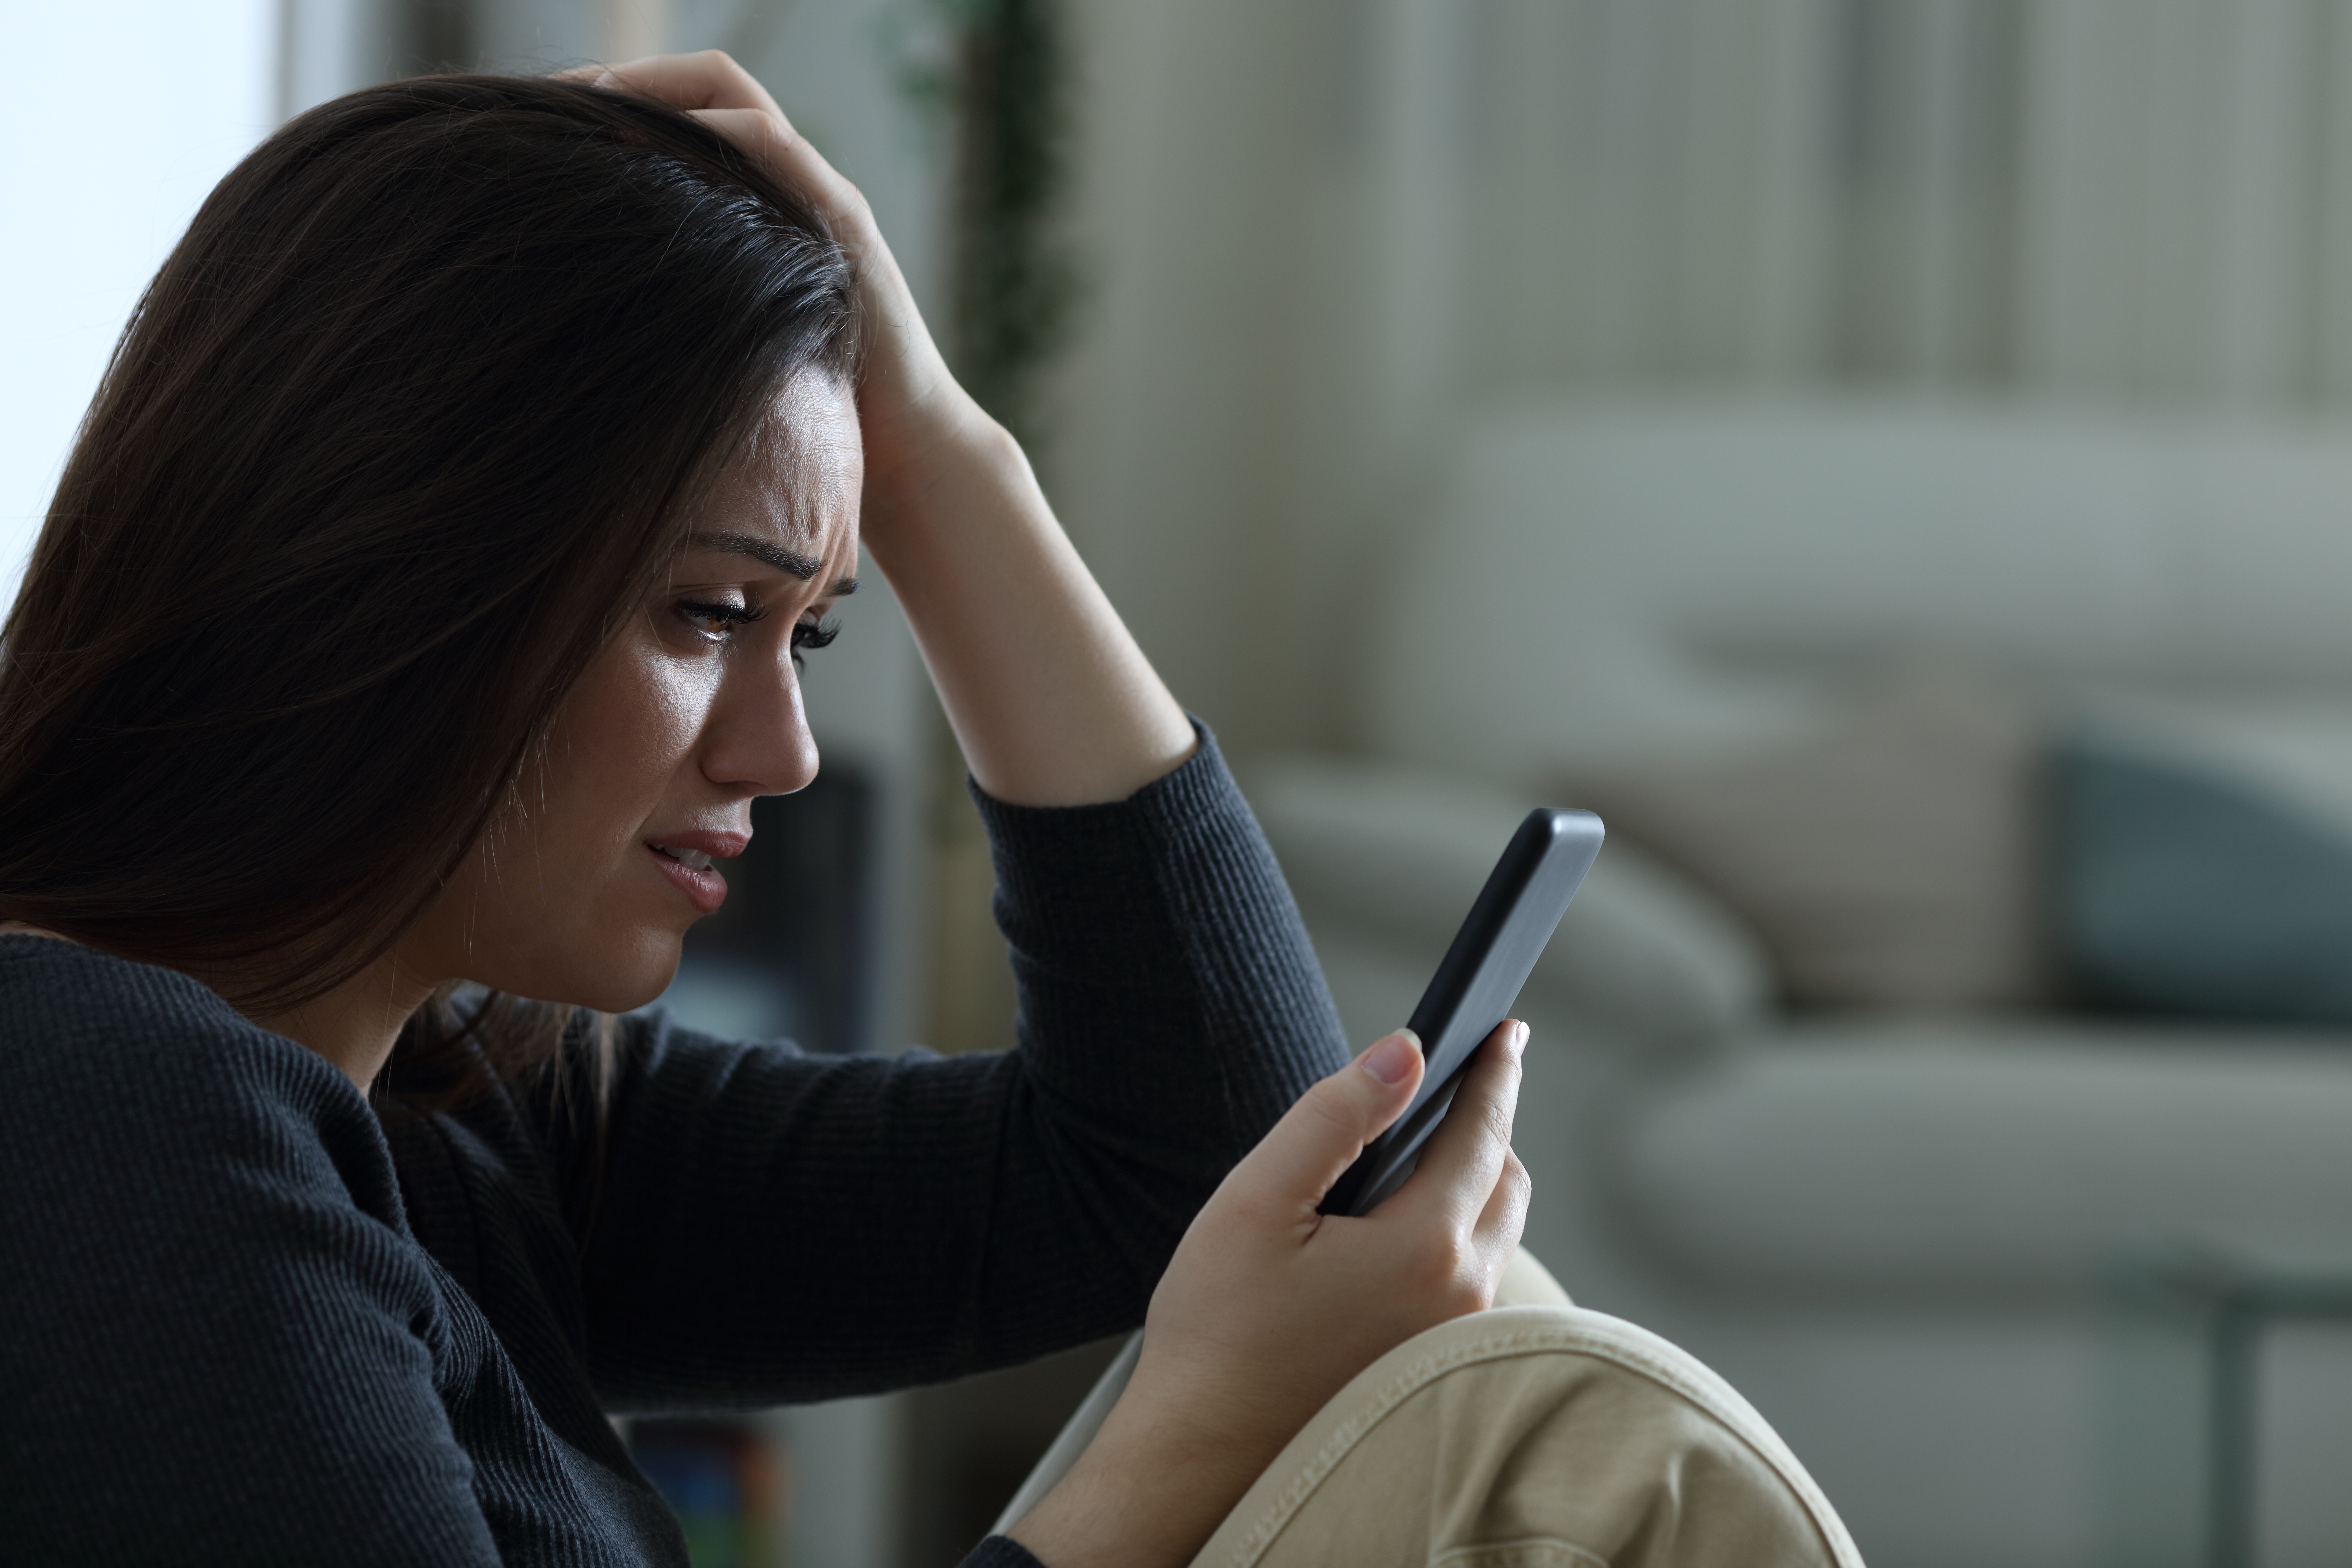 Une femme à l'air triste alors qu'elle est sur son téléphone | Source : Shutterstock